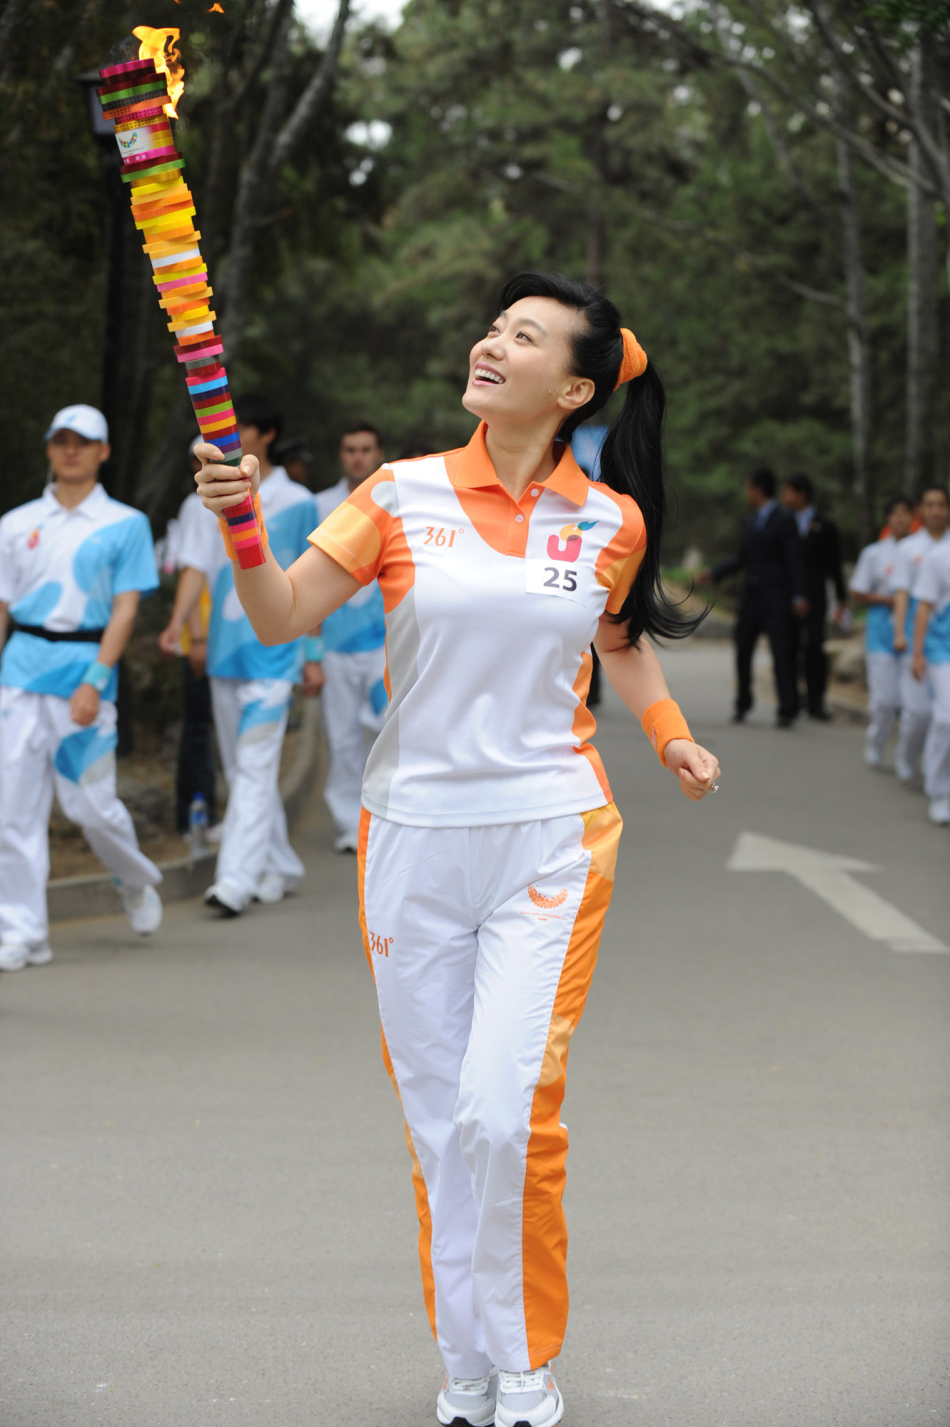 Lancement du relais de la flamme de la 26e Universiade d'été de Shenzhen(6)